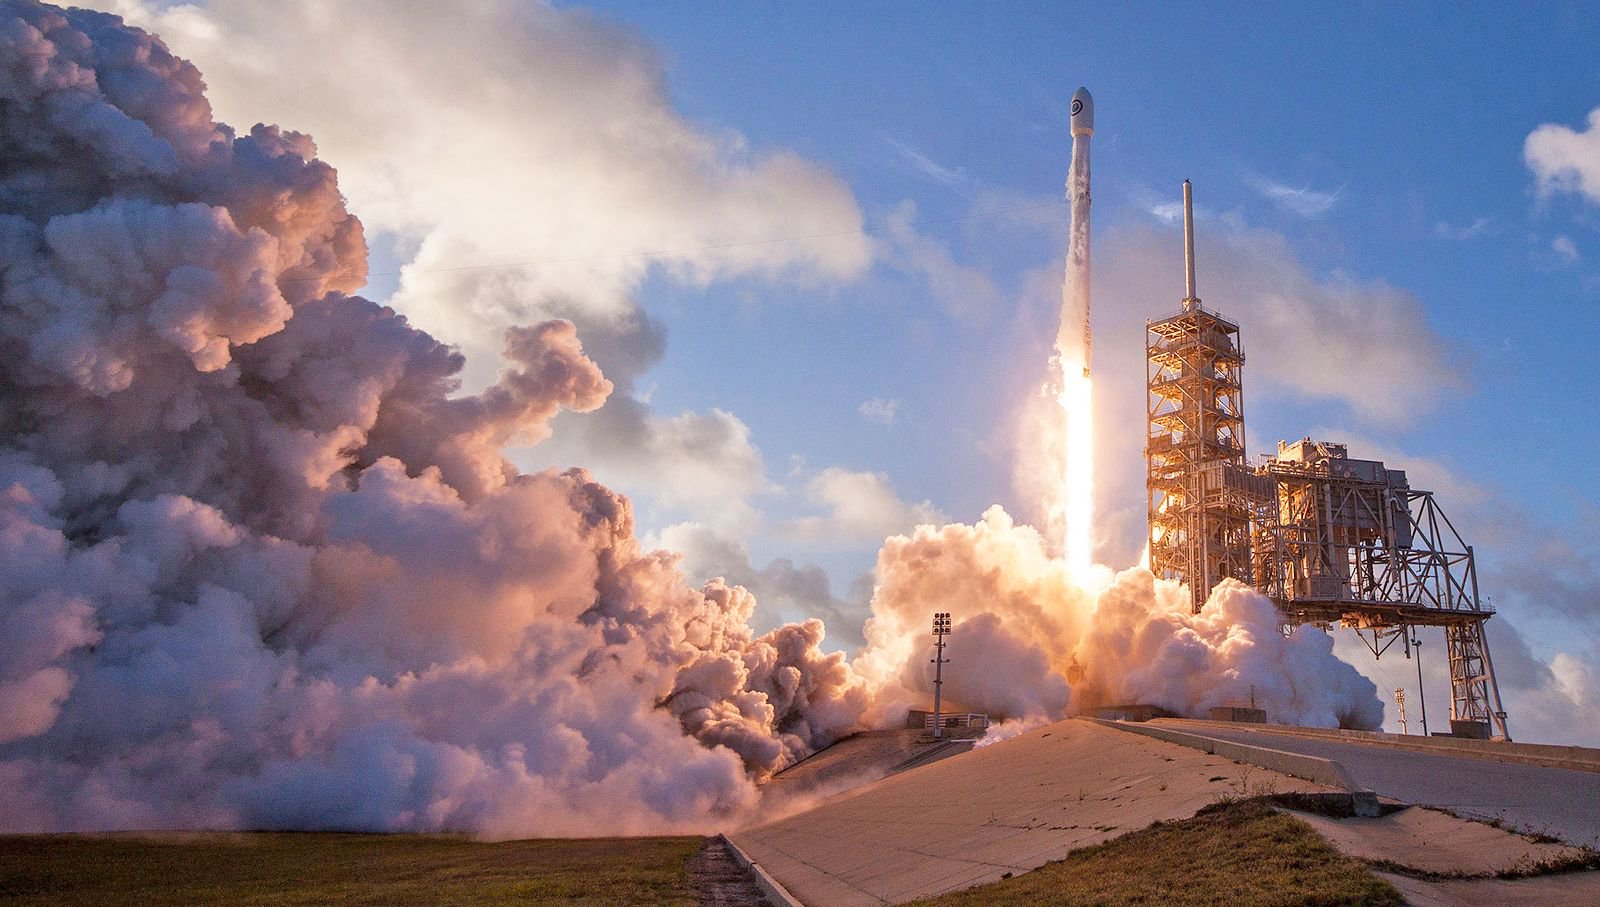 På helgen, SpaceX kommer att bana två kommunikationssatelliter